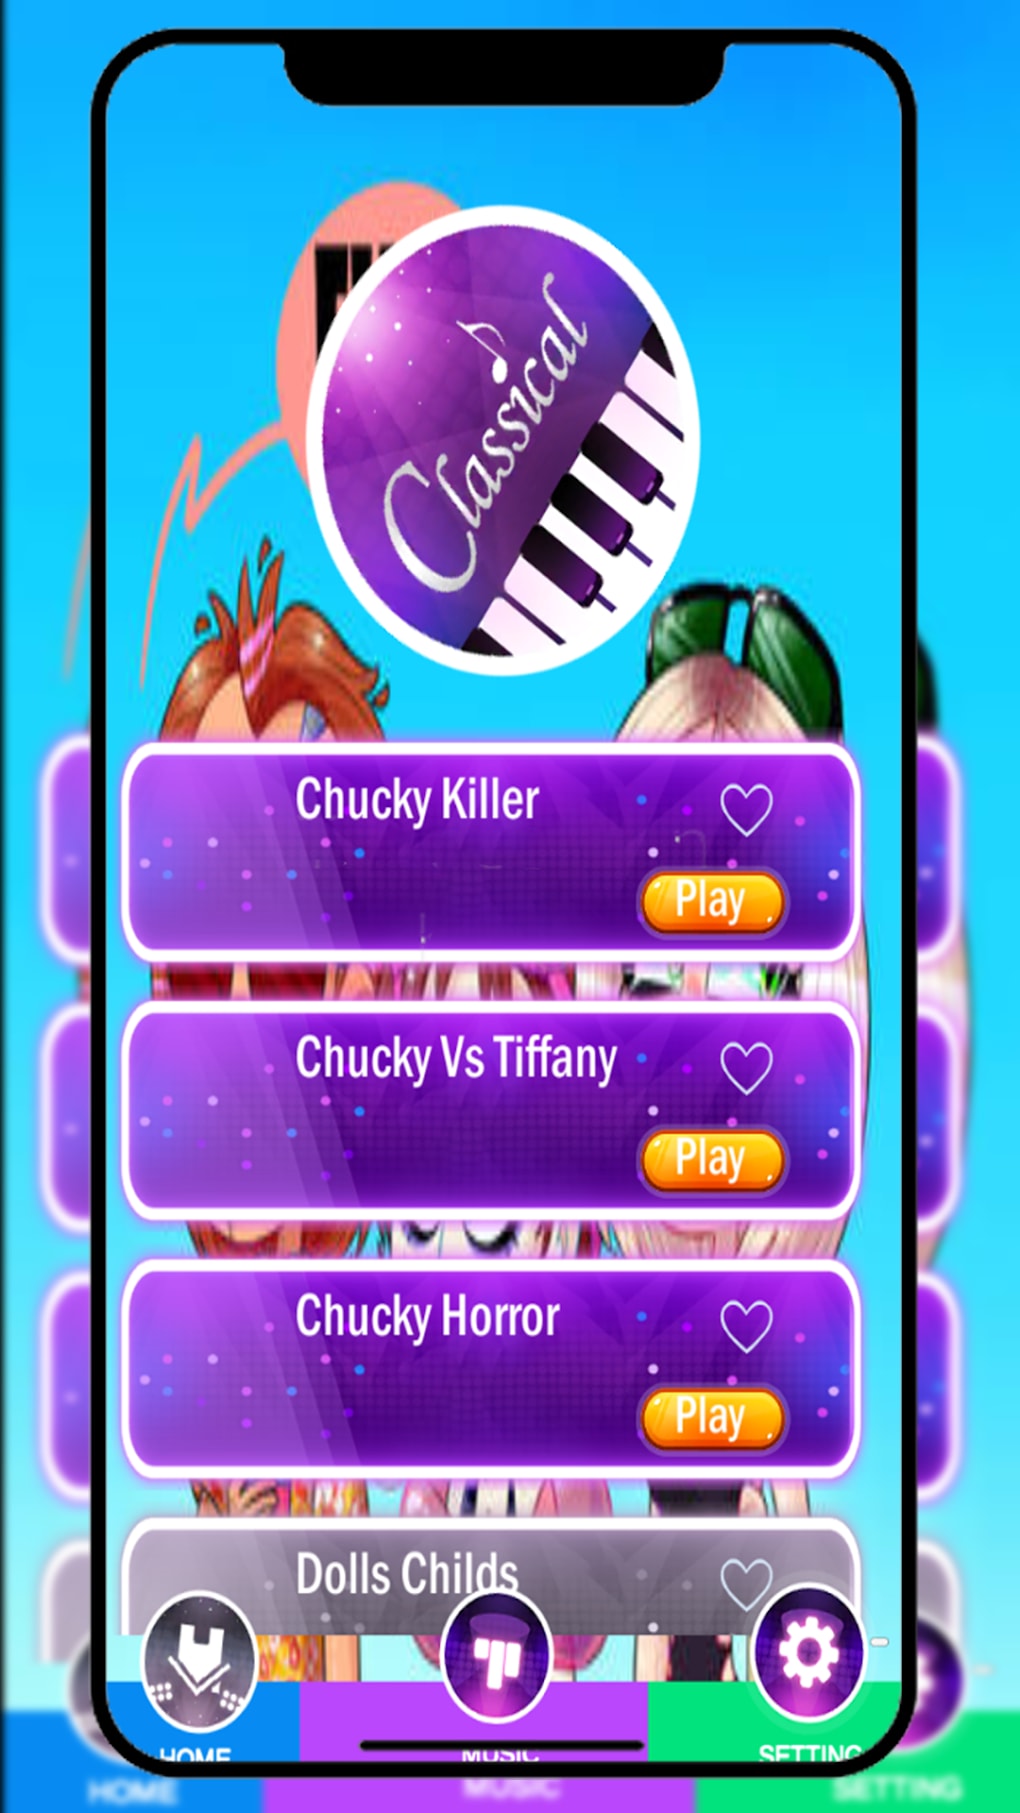 Jogo Kimberly Loaiza Piano for Android - Free App Download